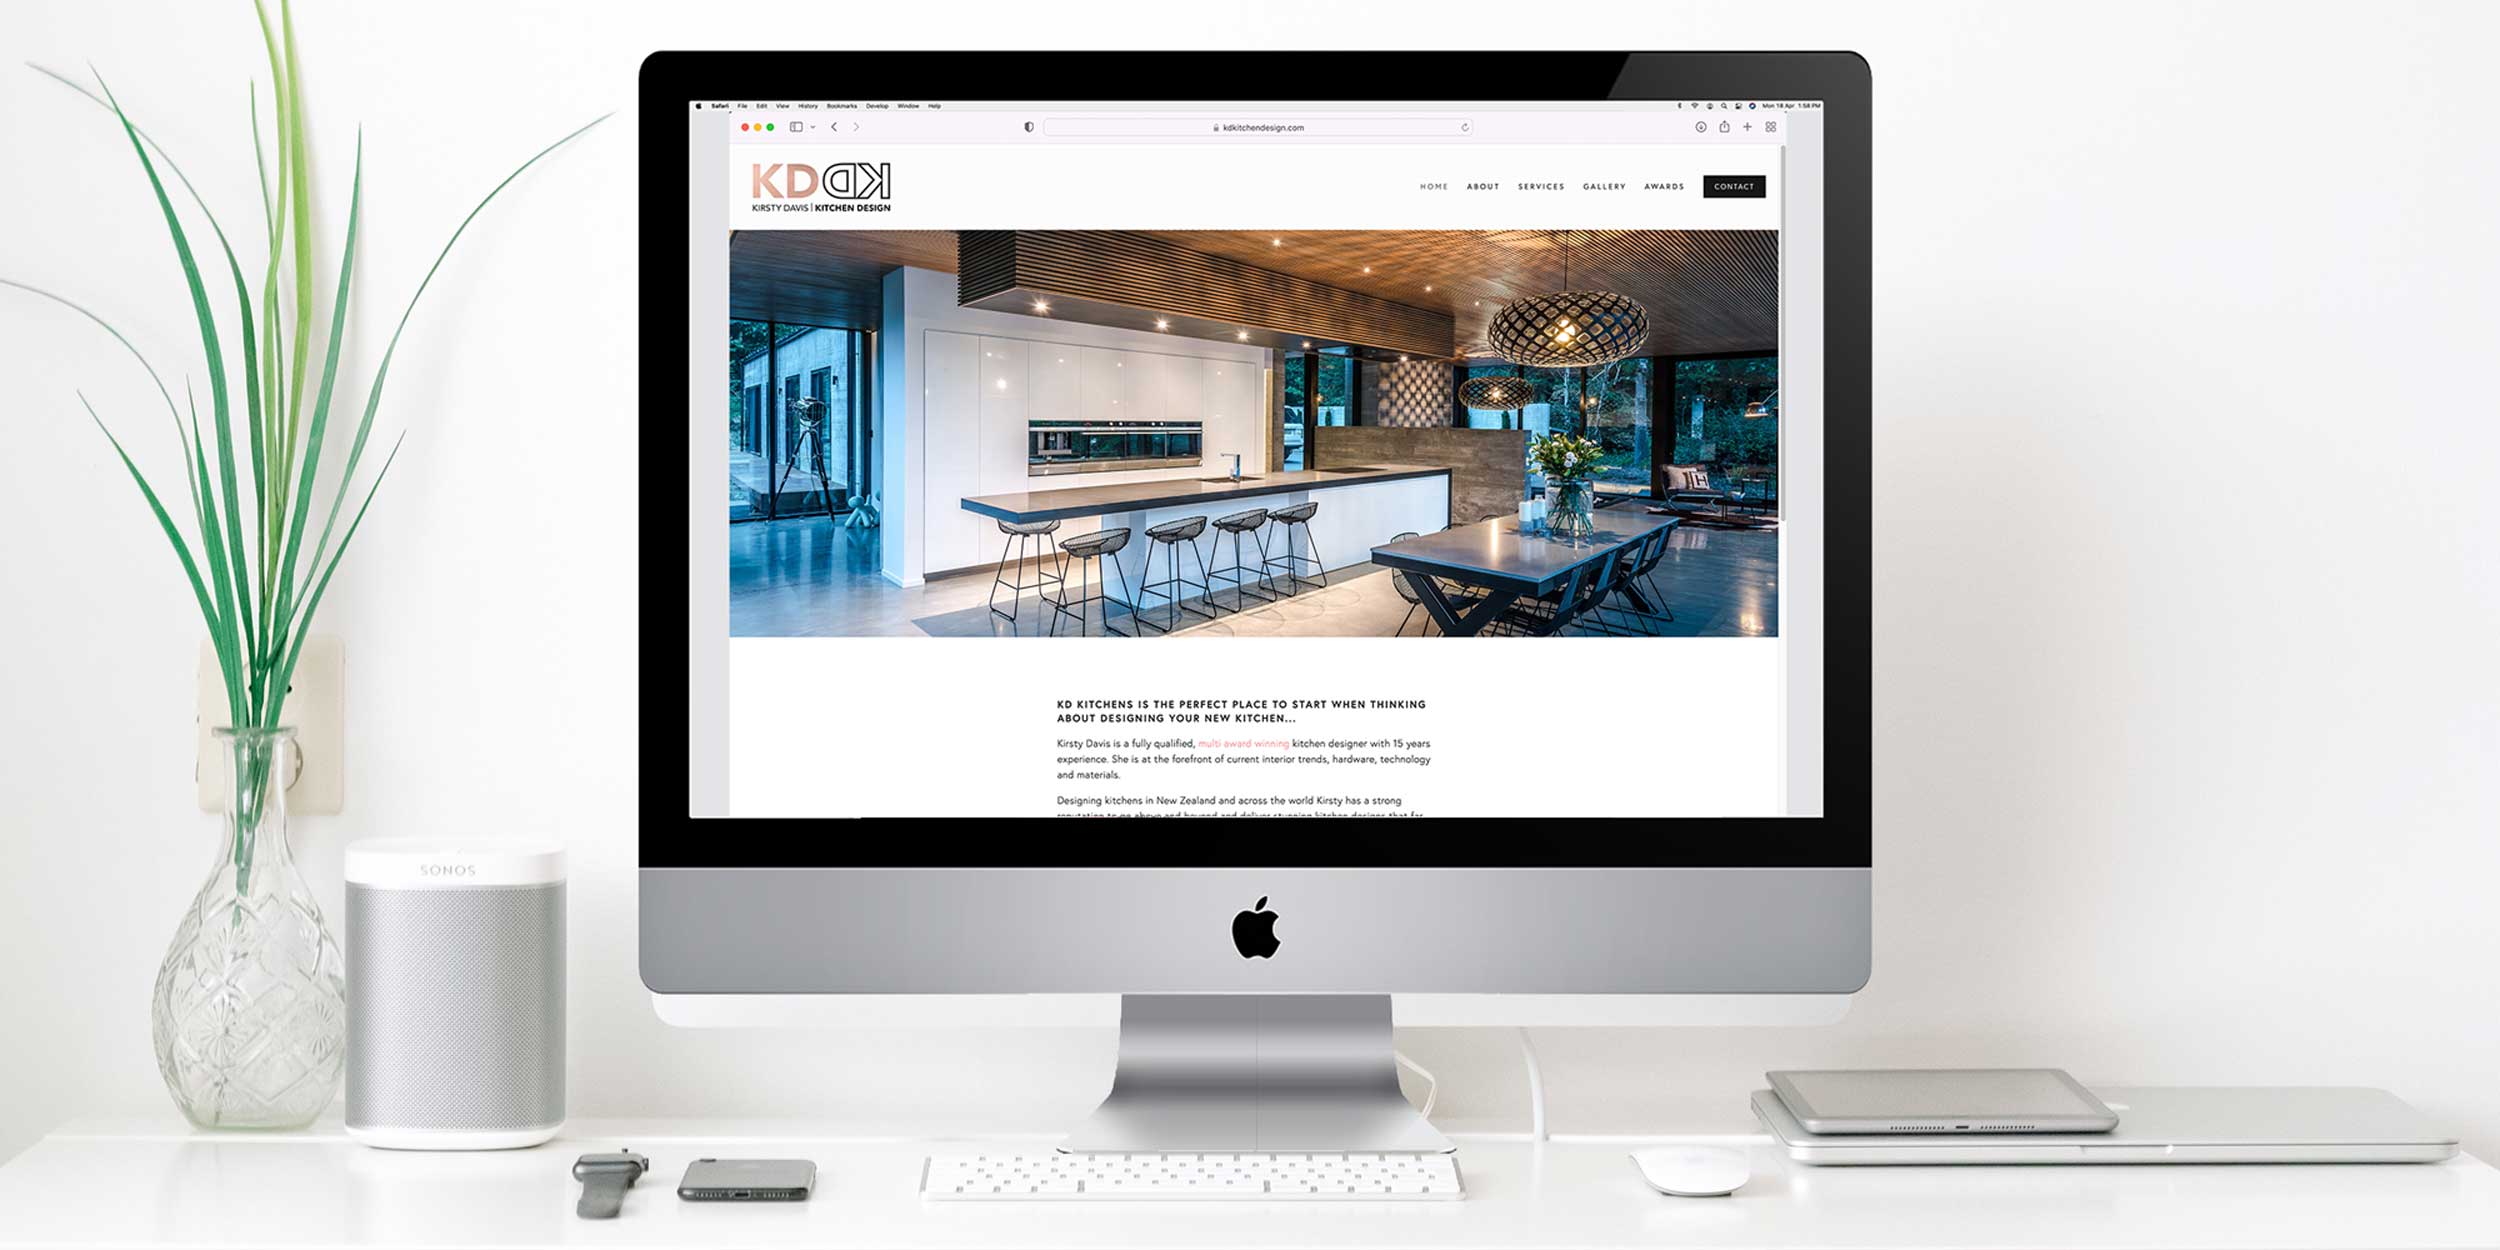 KD Kitchen Design Website Design